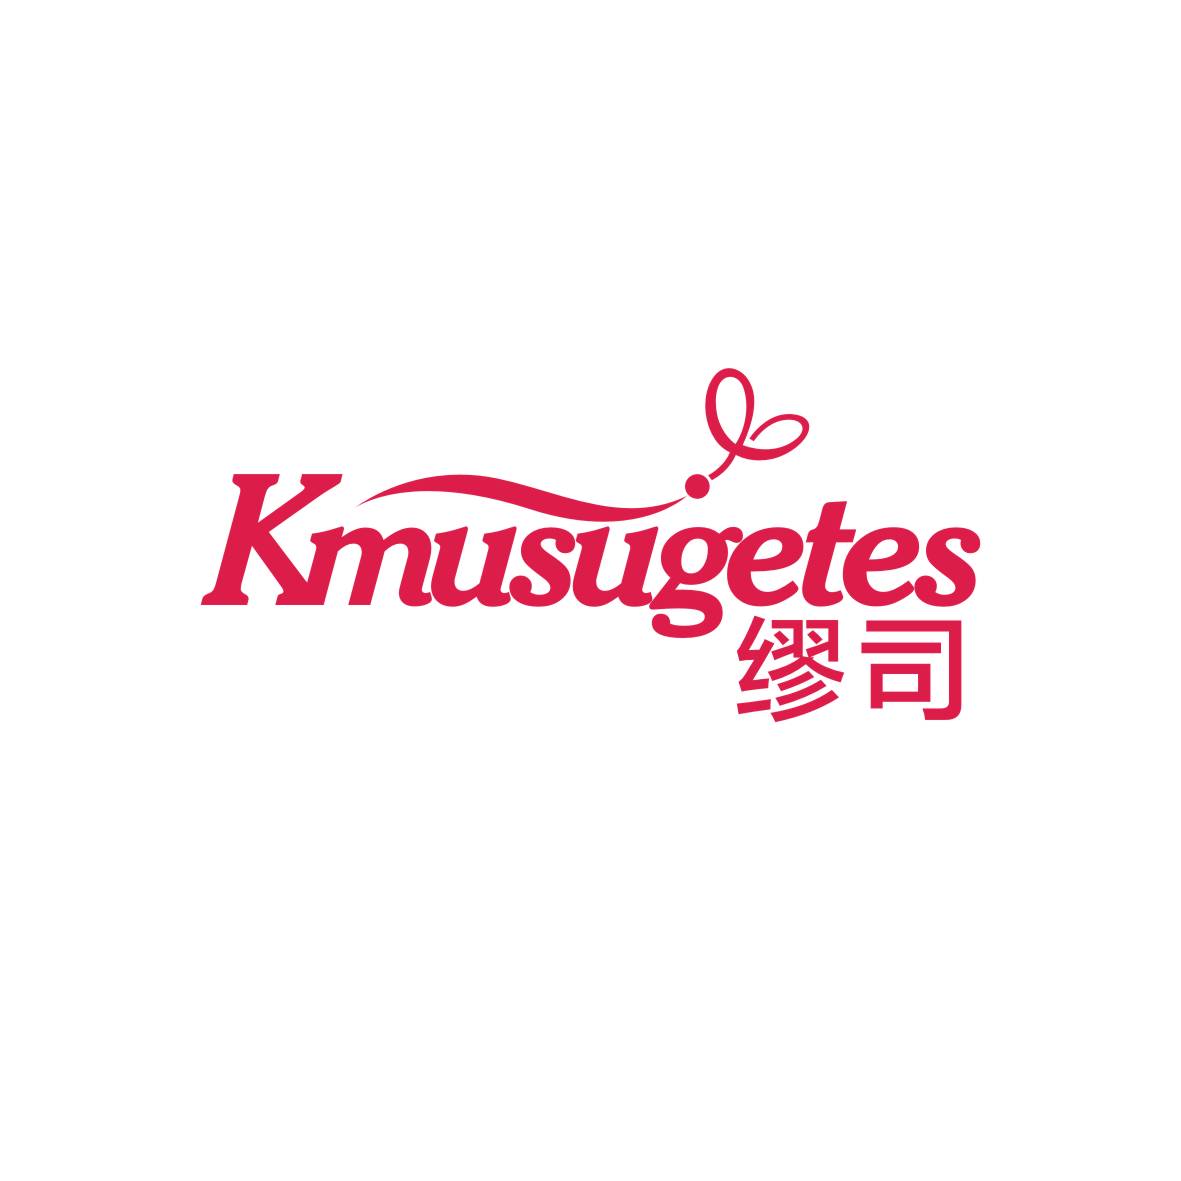 金身元商标缪司 KMUSUGETES（10类）商标买卖平台报价，上哪个平台最省钱？